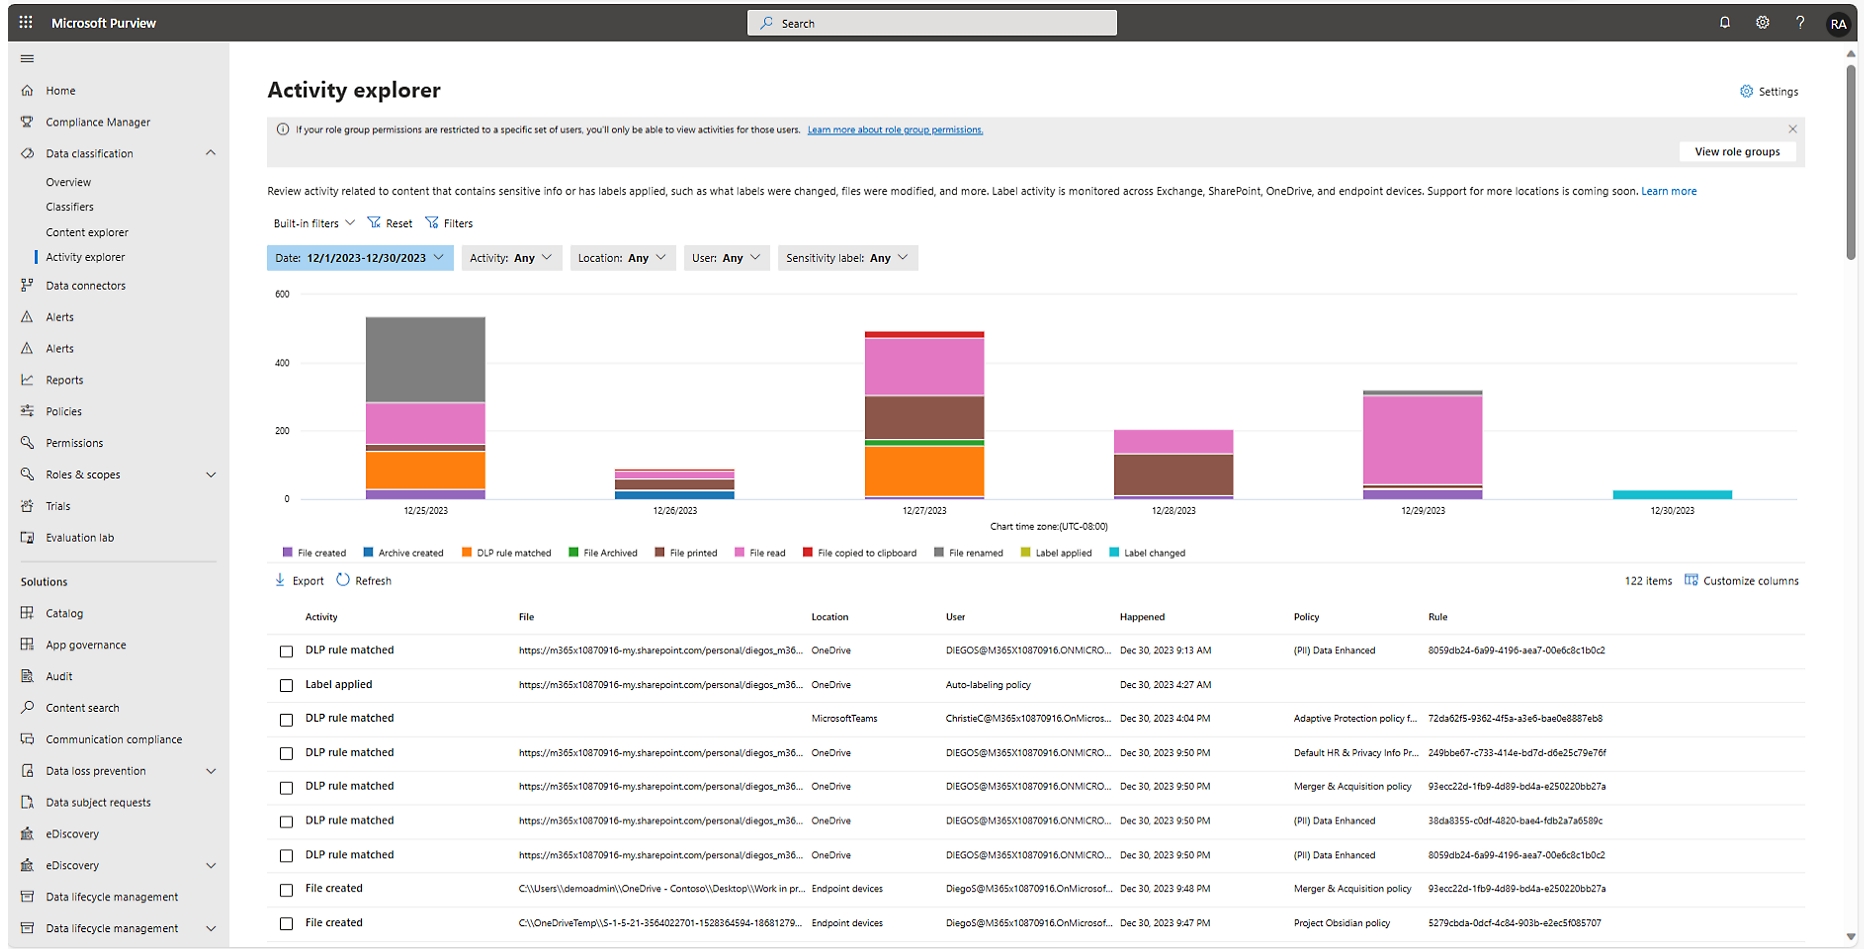 Antarmuka penjelajah aktivitas pusat mitra Microsoft, menampilkan grafik dan tabel dengan data terkait aktivitas pengguna.